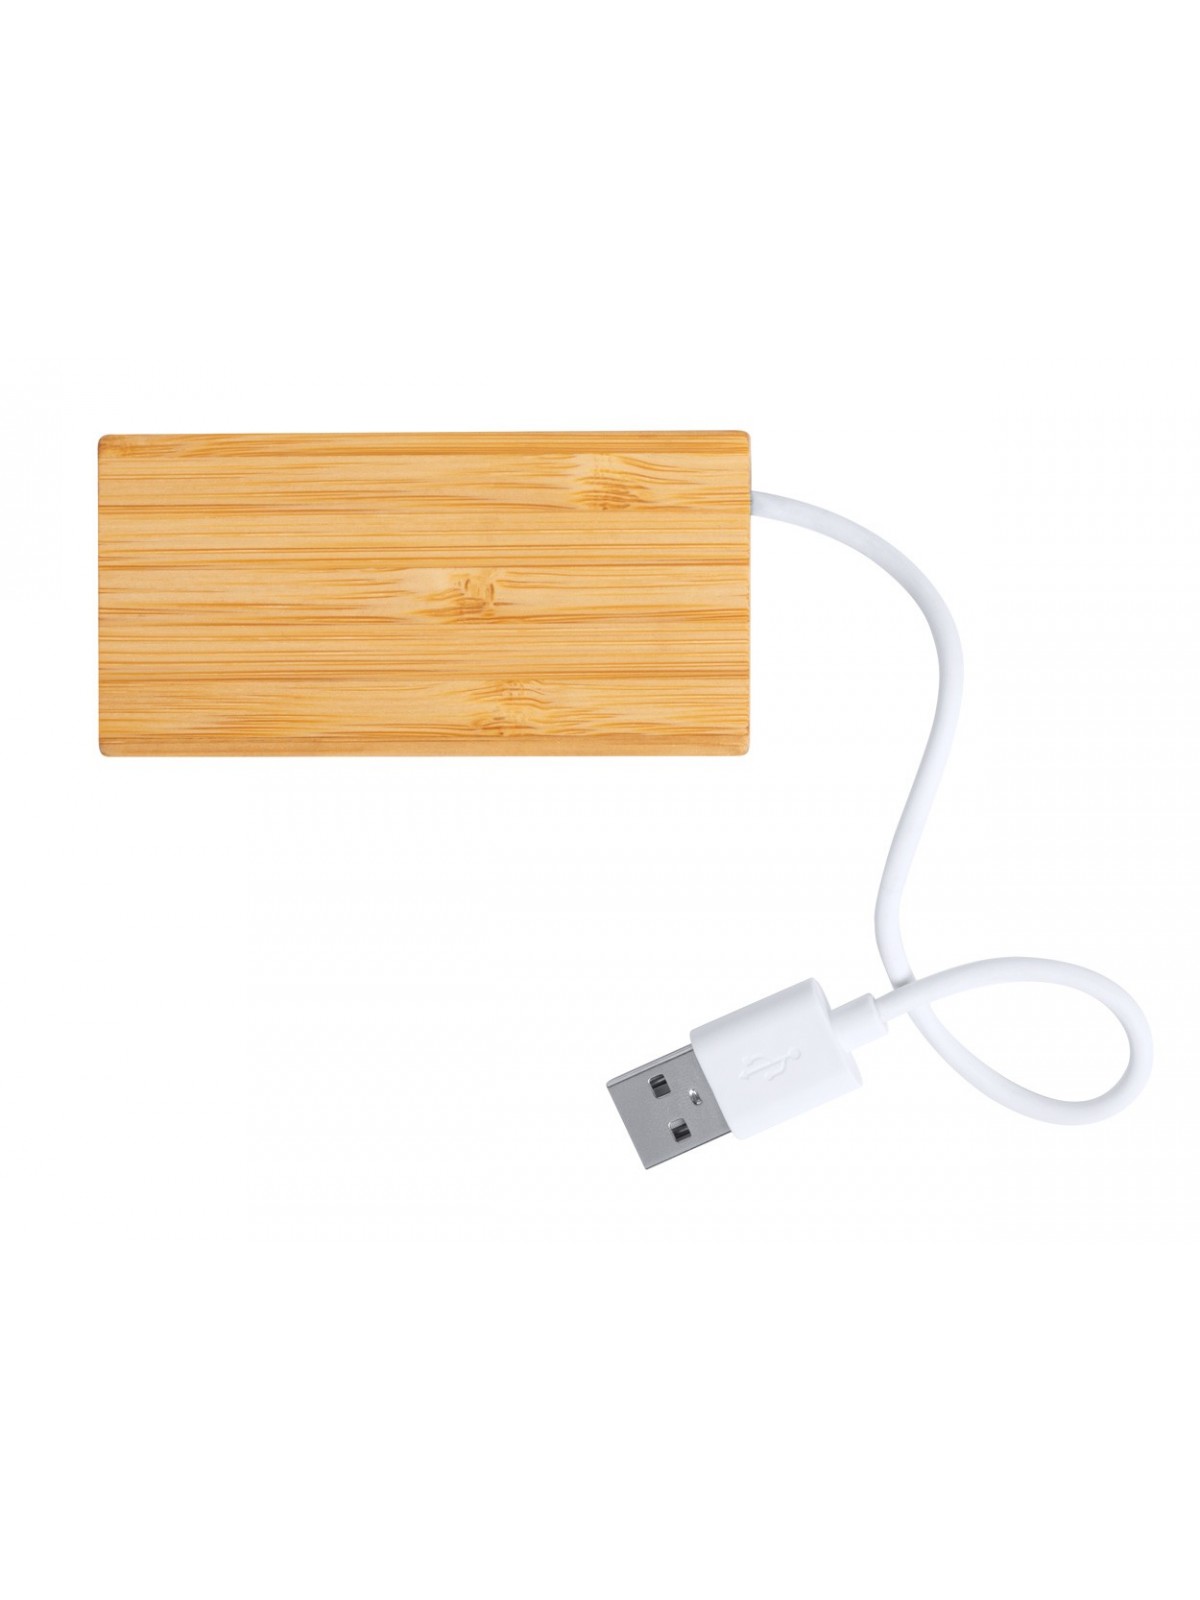 10-600 Hub USB en bambou personnalisé